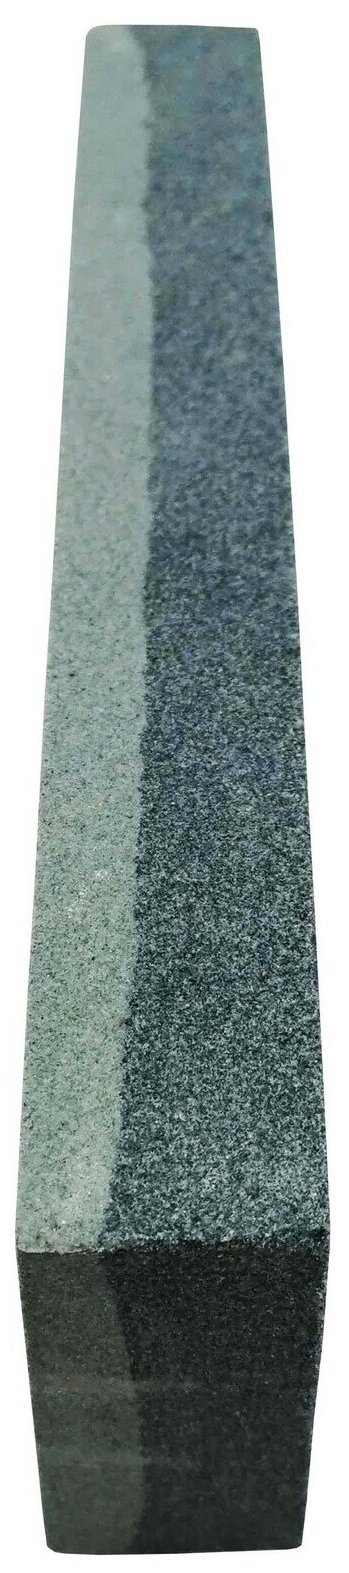 Точильный брусок камень для заточки ножей косы серпа 150 мм